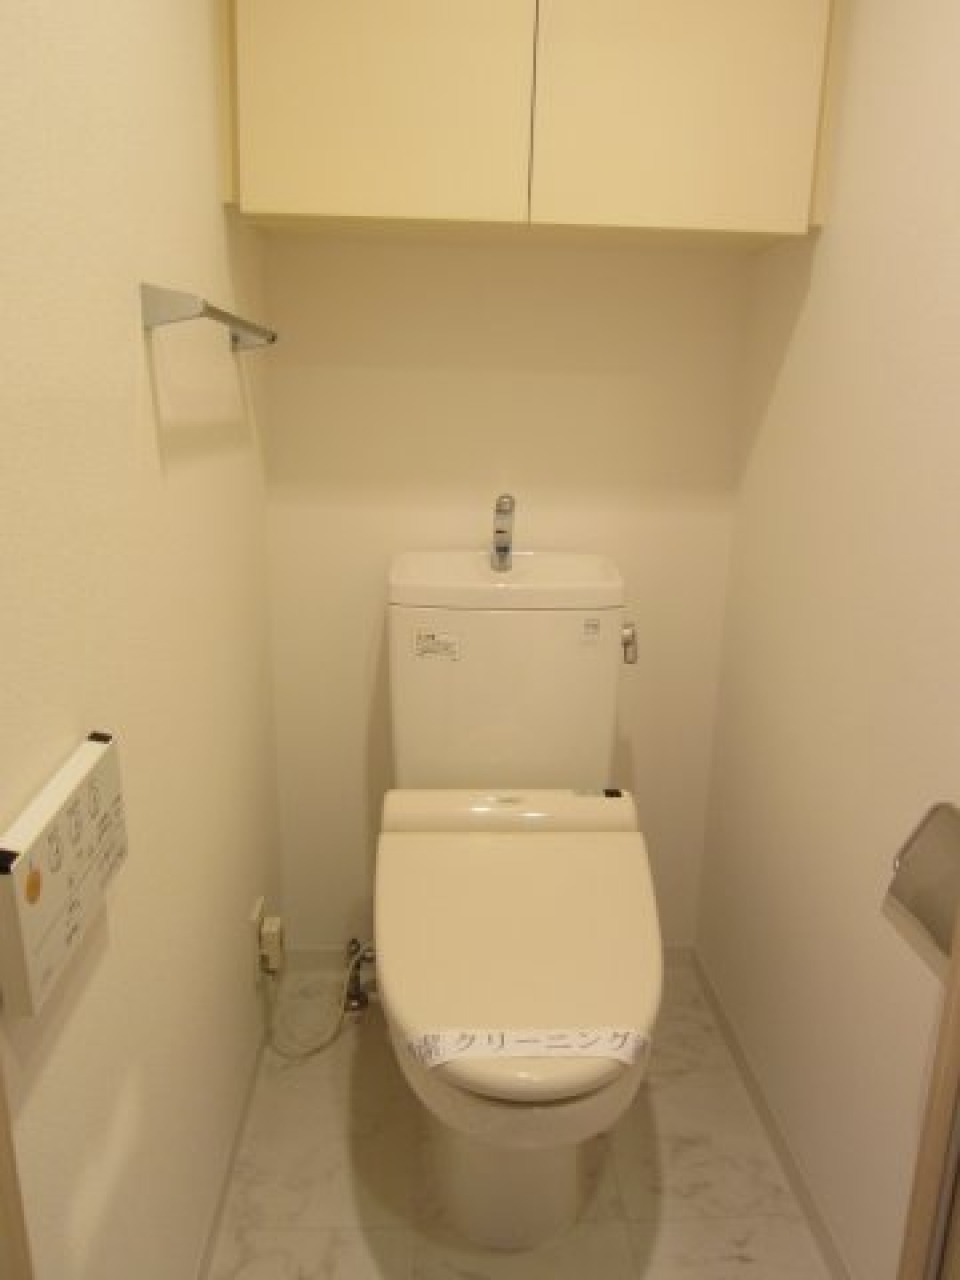 収納棚のついた、清潔感のあるトイレ
※参考写真